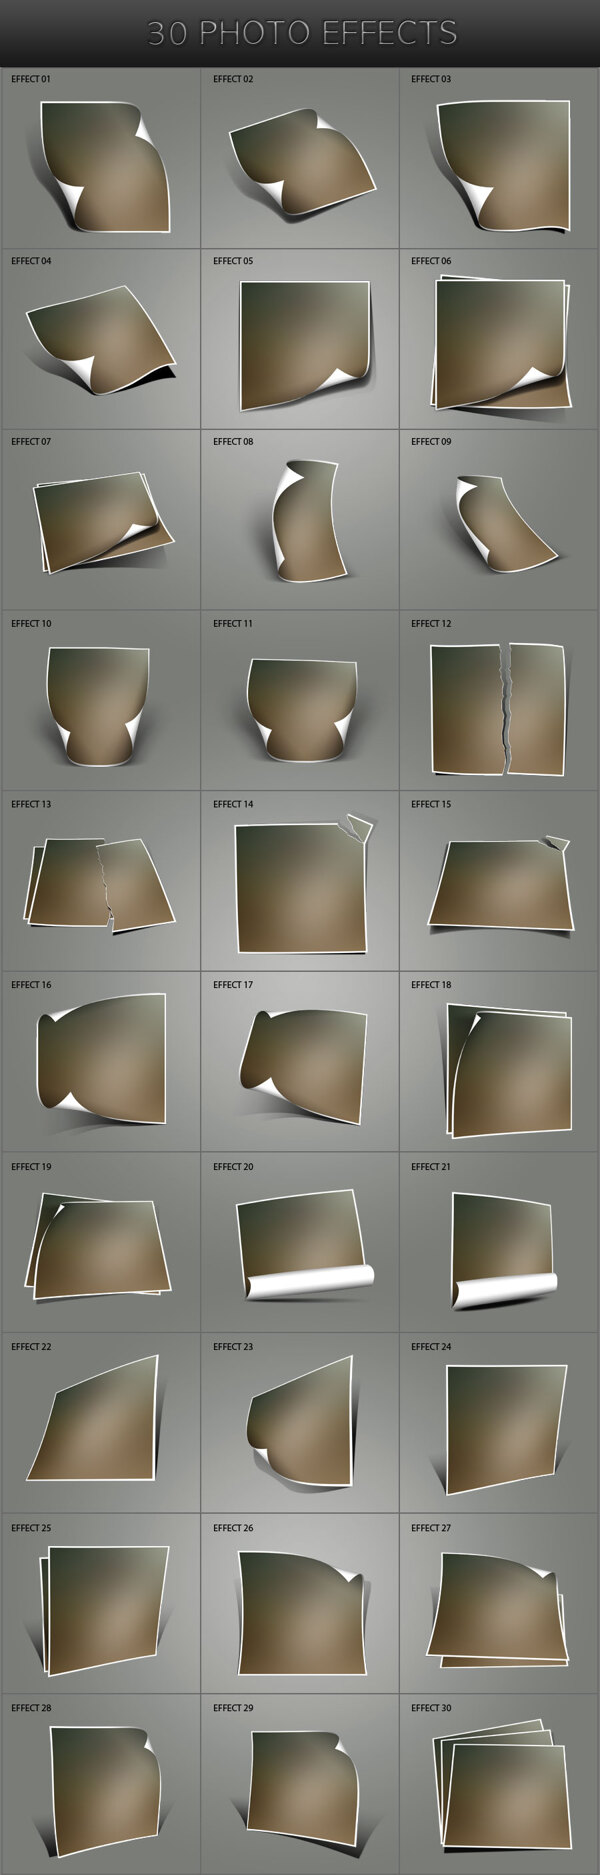 30种立体相框照片效果ps动作图片